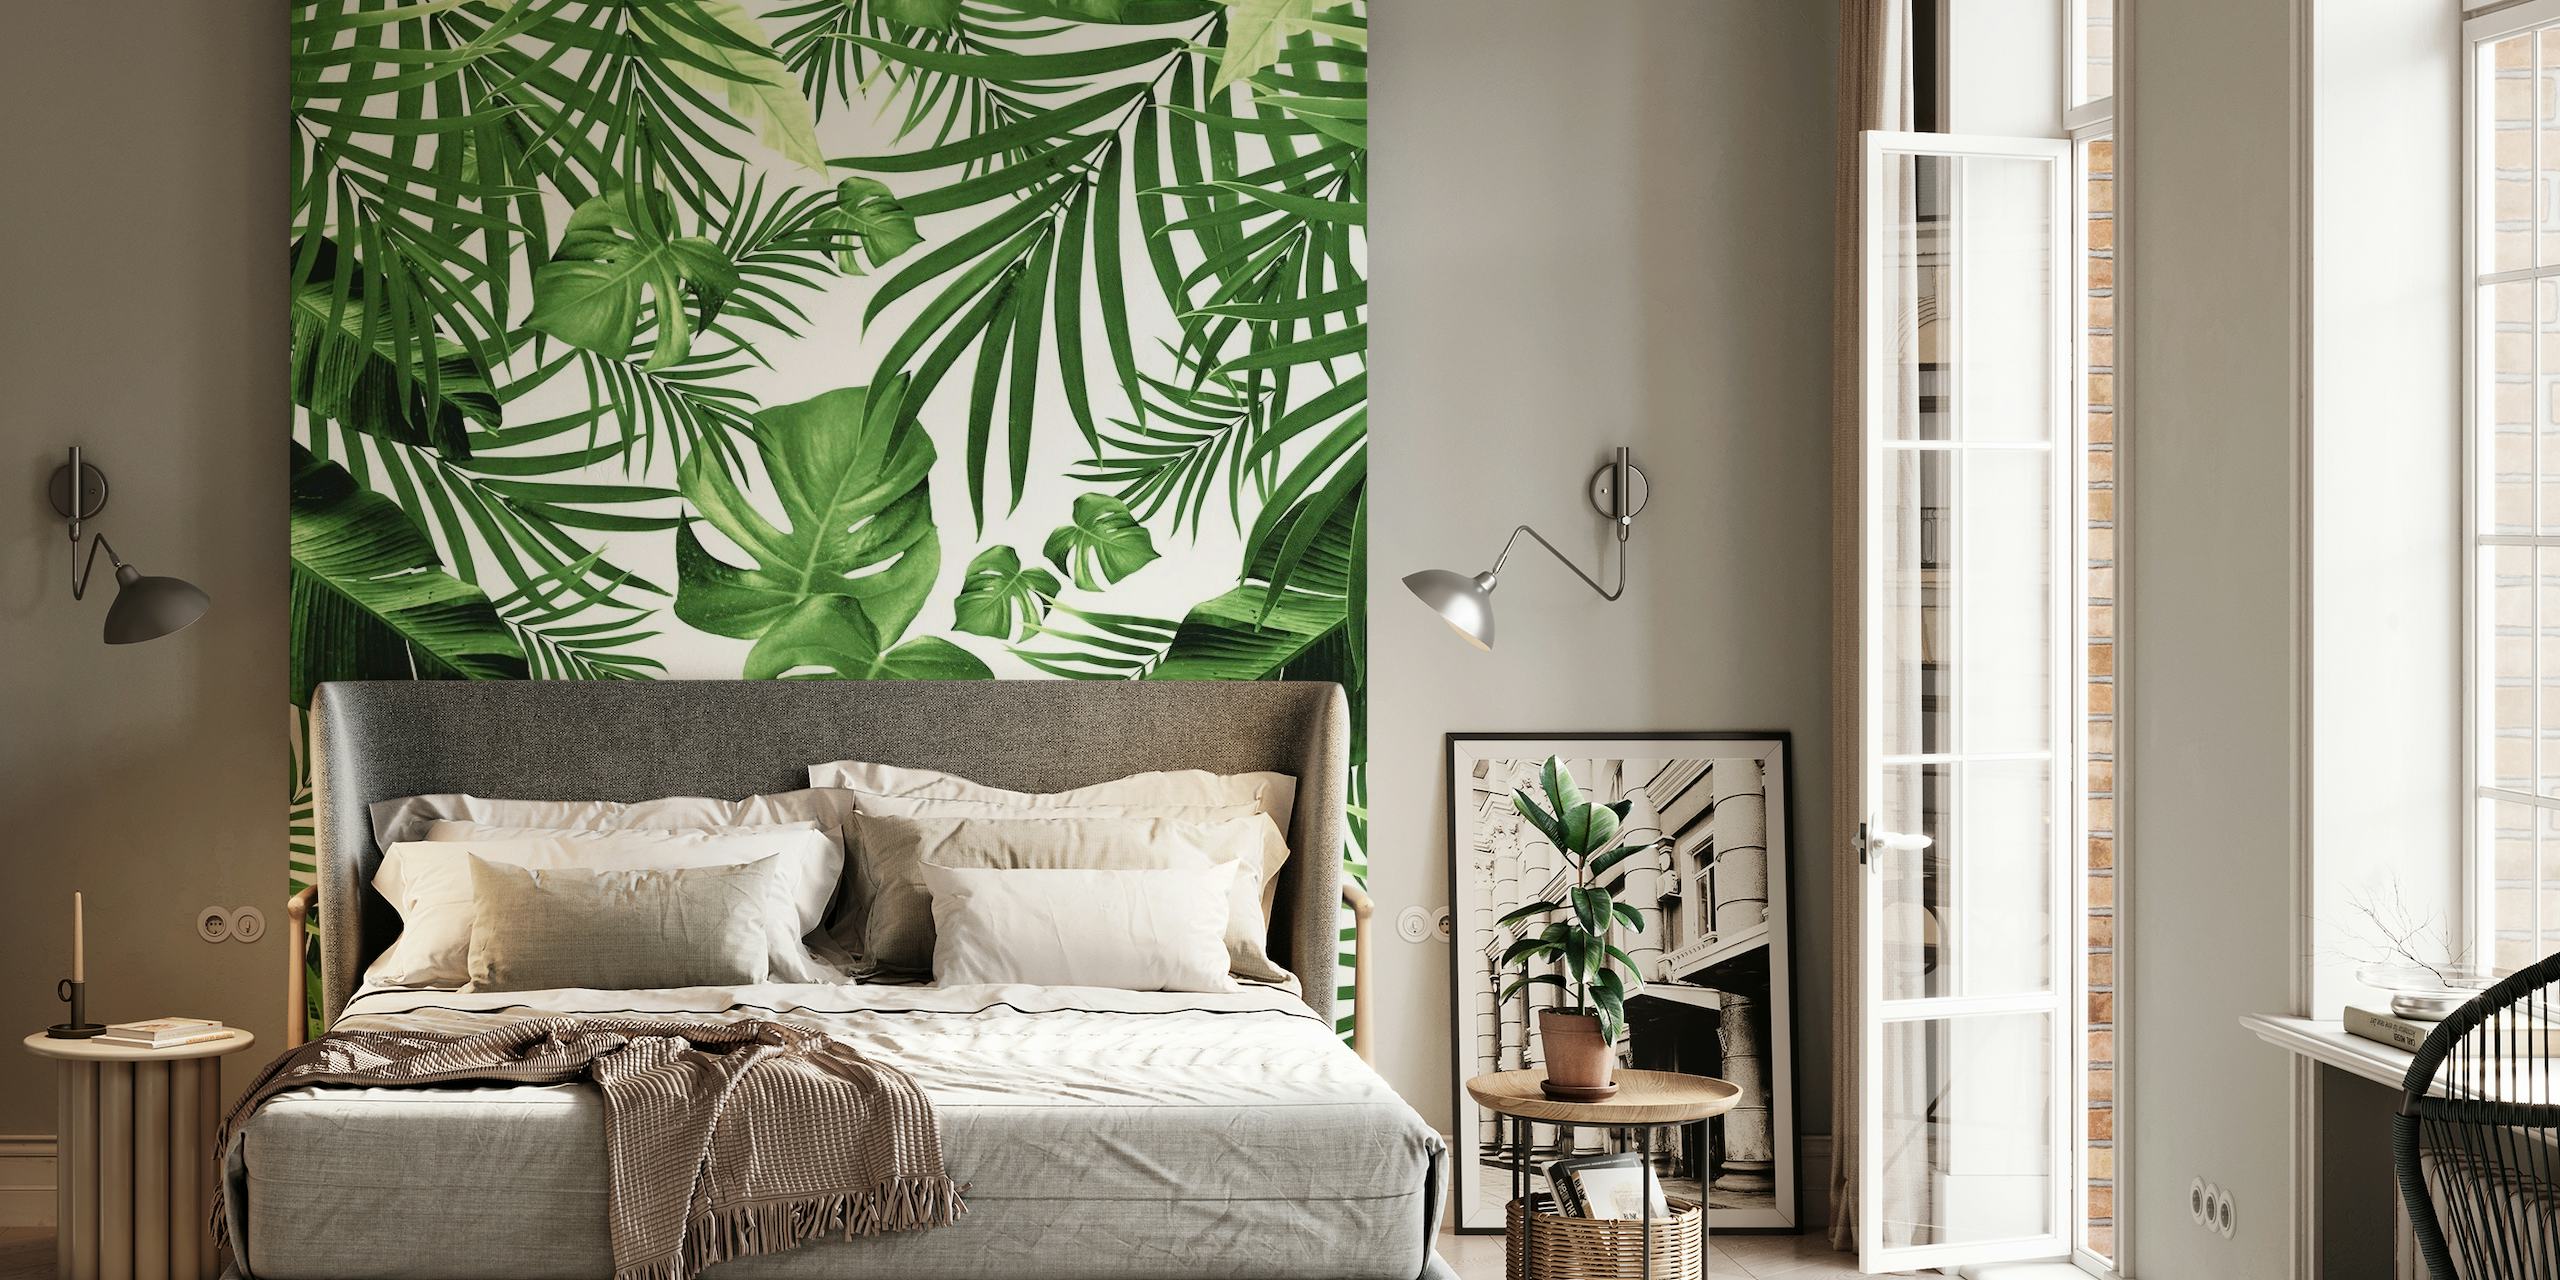 Tropische jungle muurschildering met groene palm- en monsterabladeren